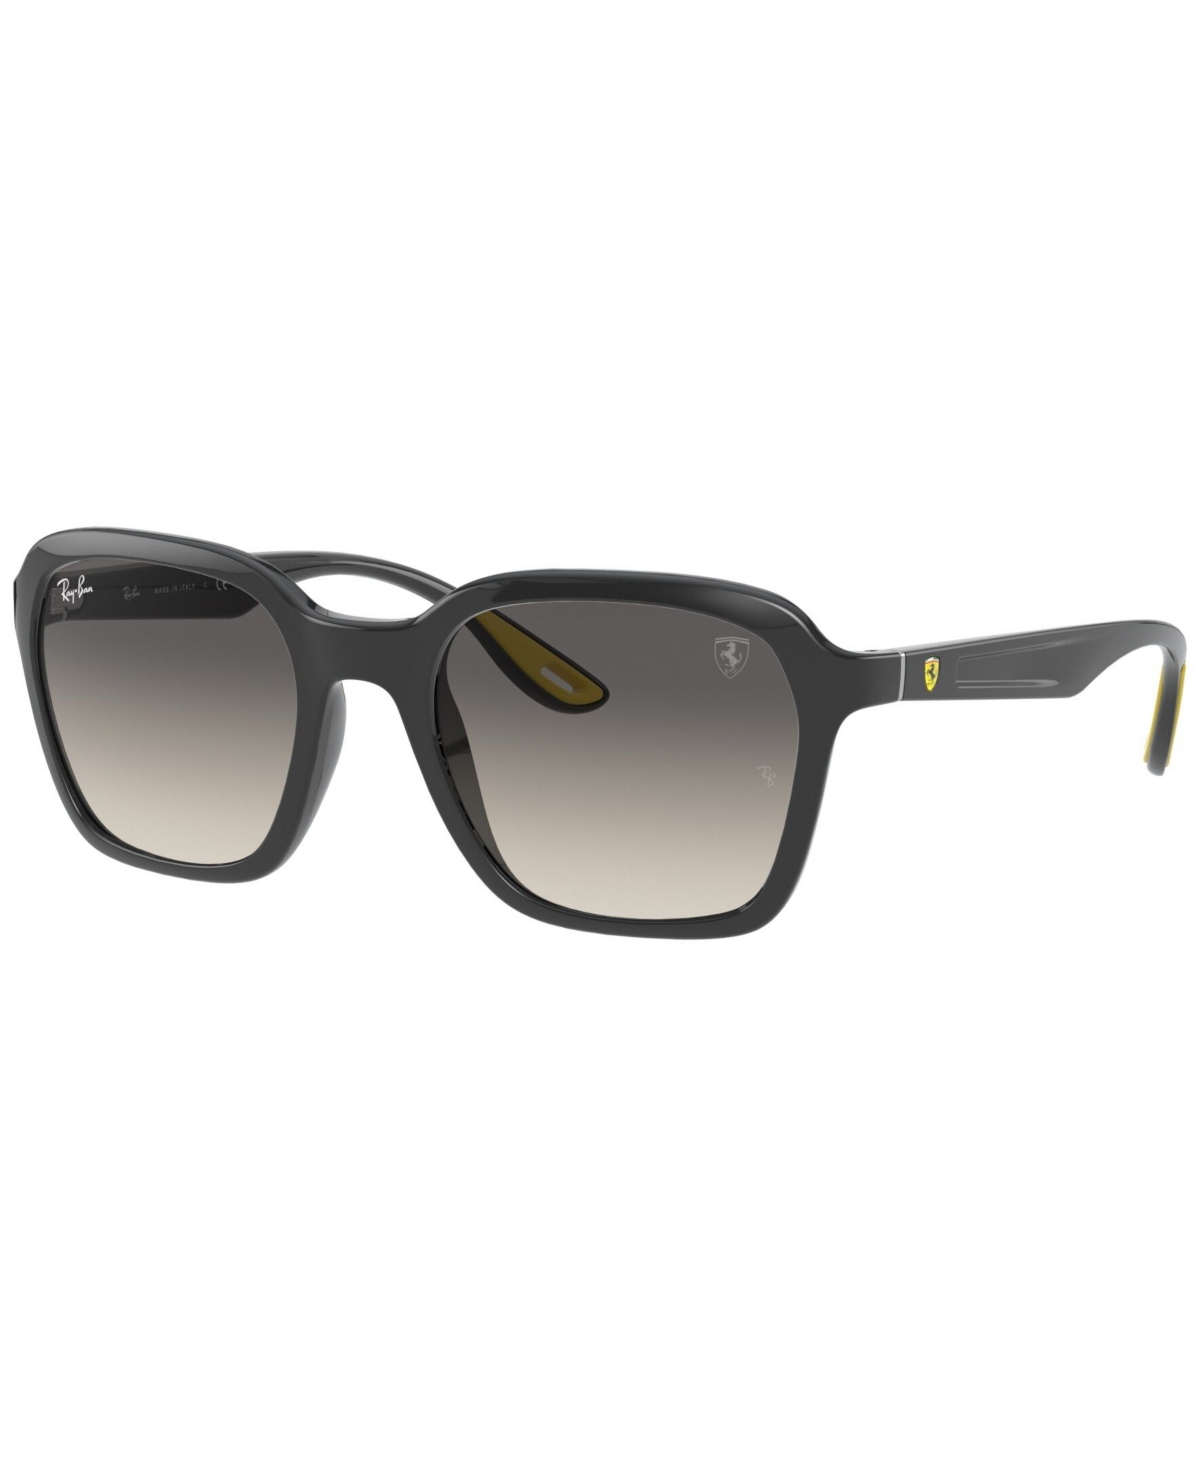 Ray Ban Scuderia Ferrari Collection Unisex Sunglasses, Rb4343m In Gray